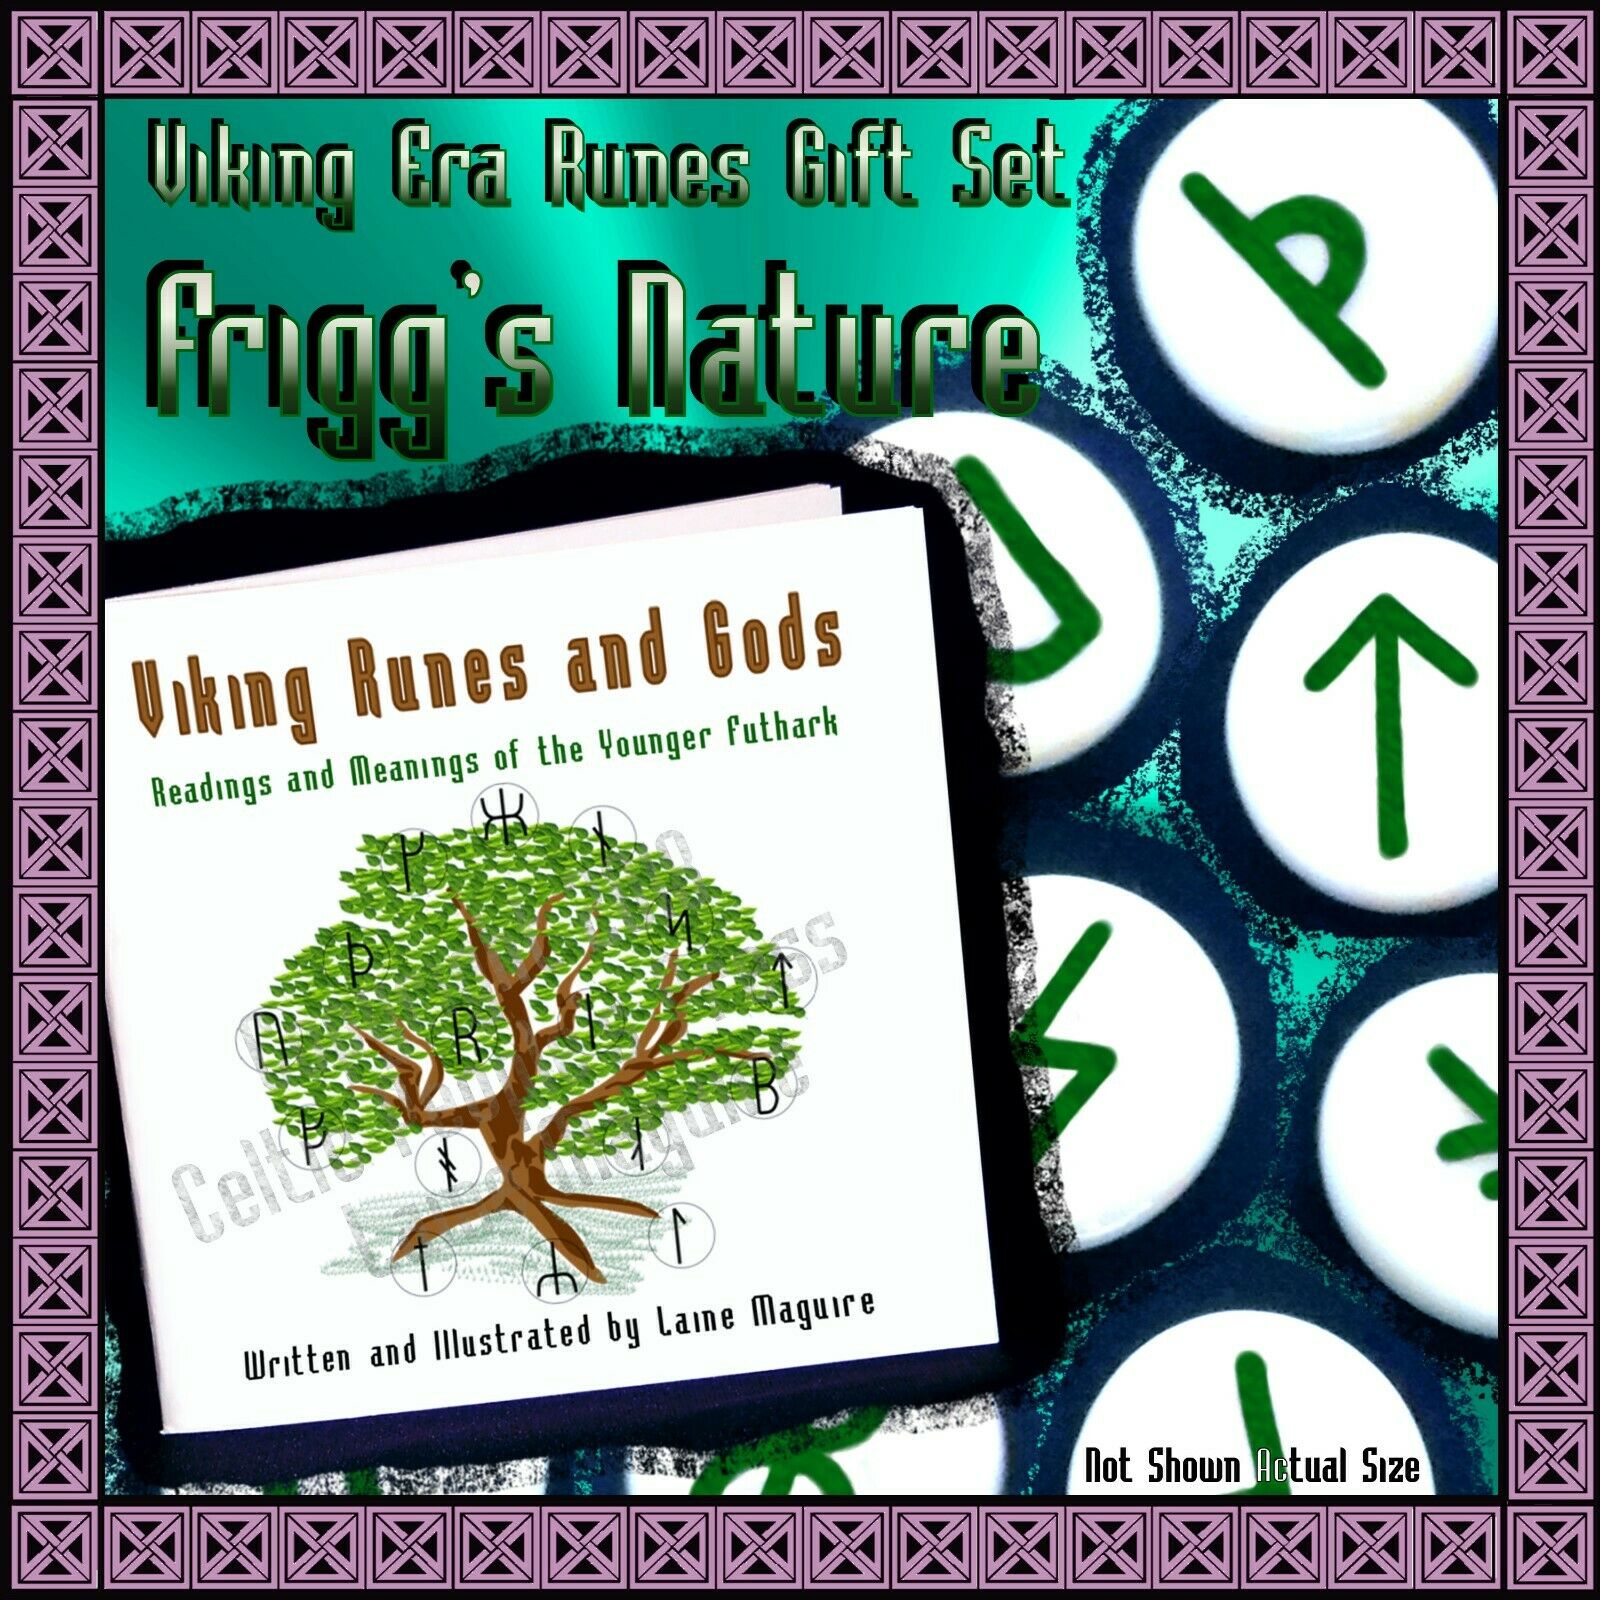 Frigg’s Nature Viking Runes & Gods Gift Set; Green White Norse Myth Goddess Gods